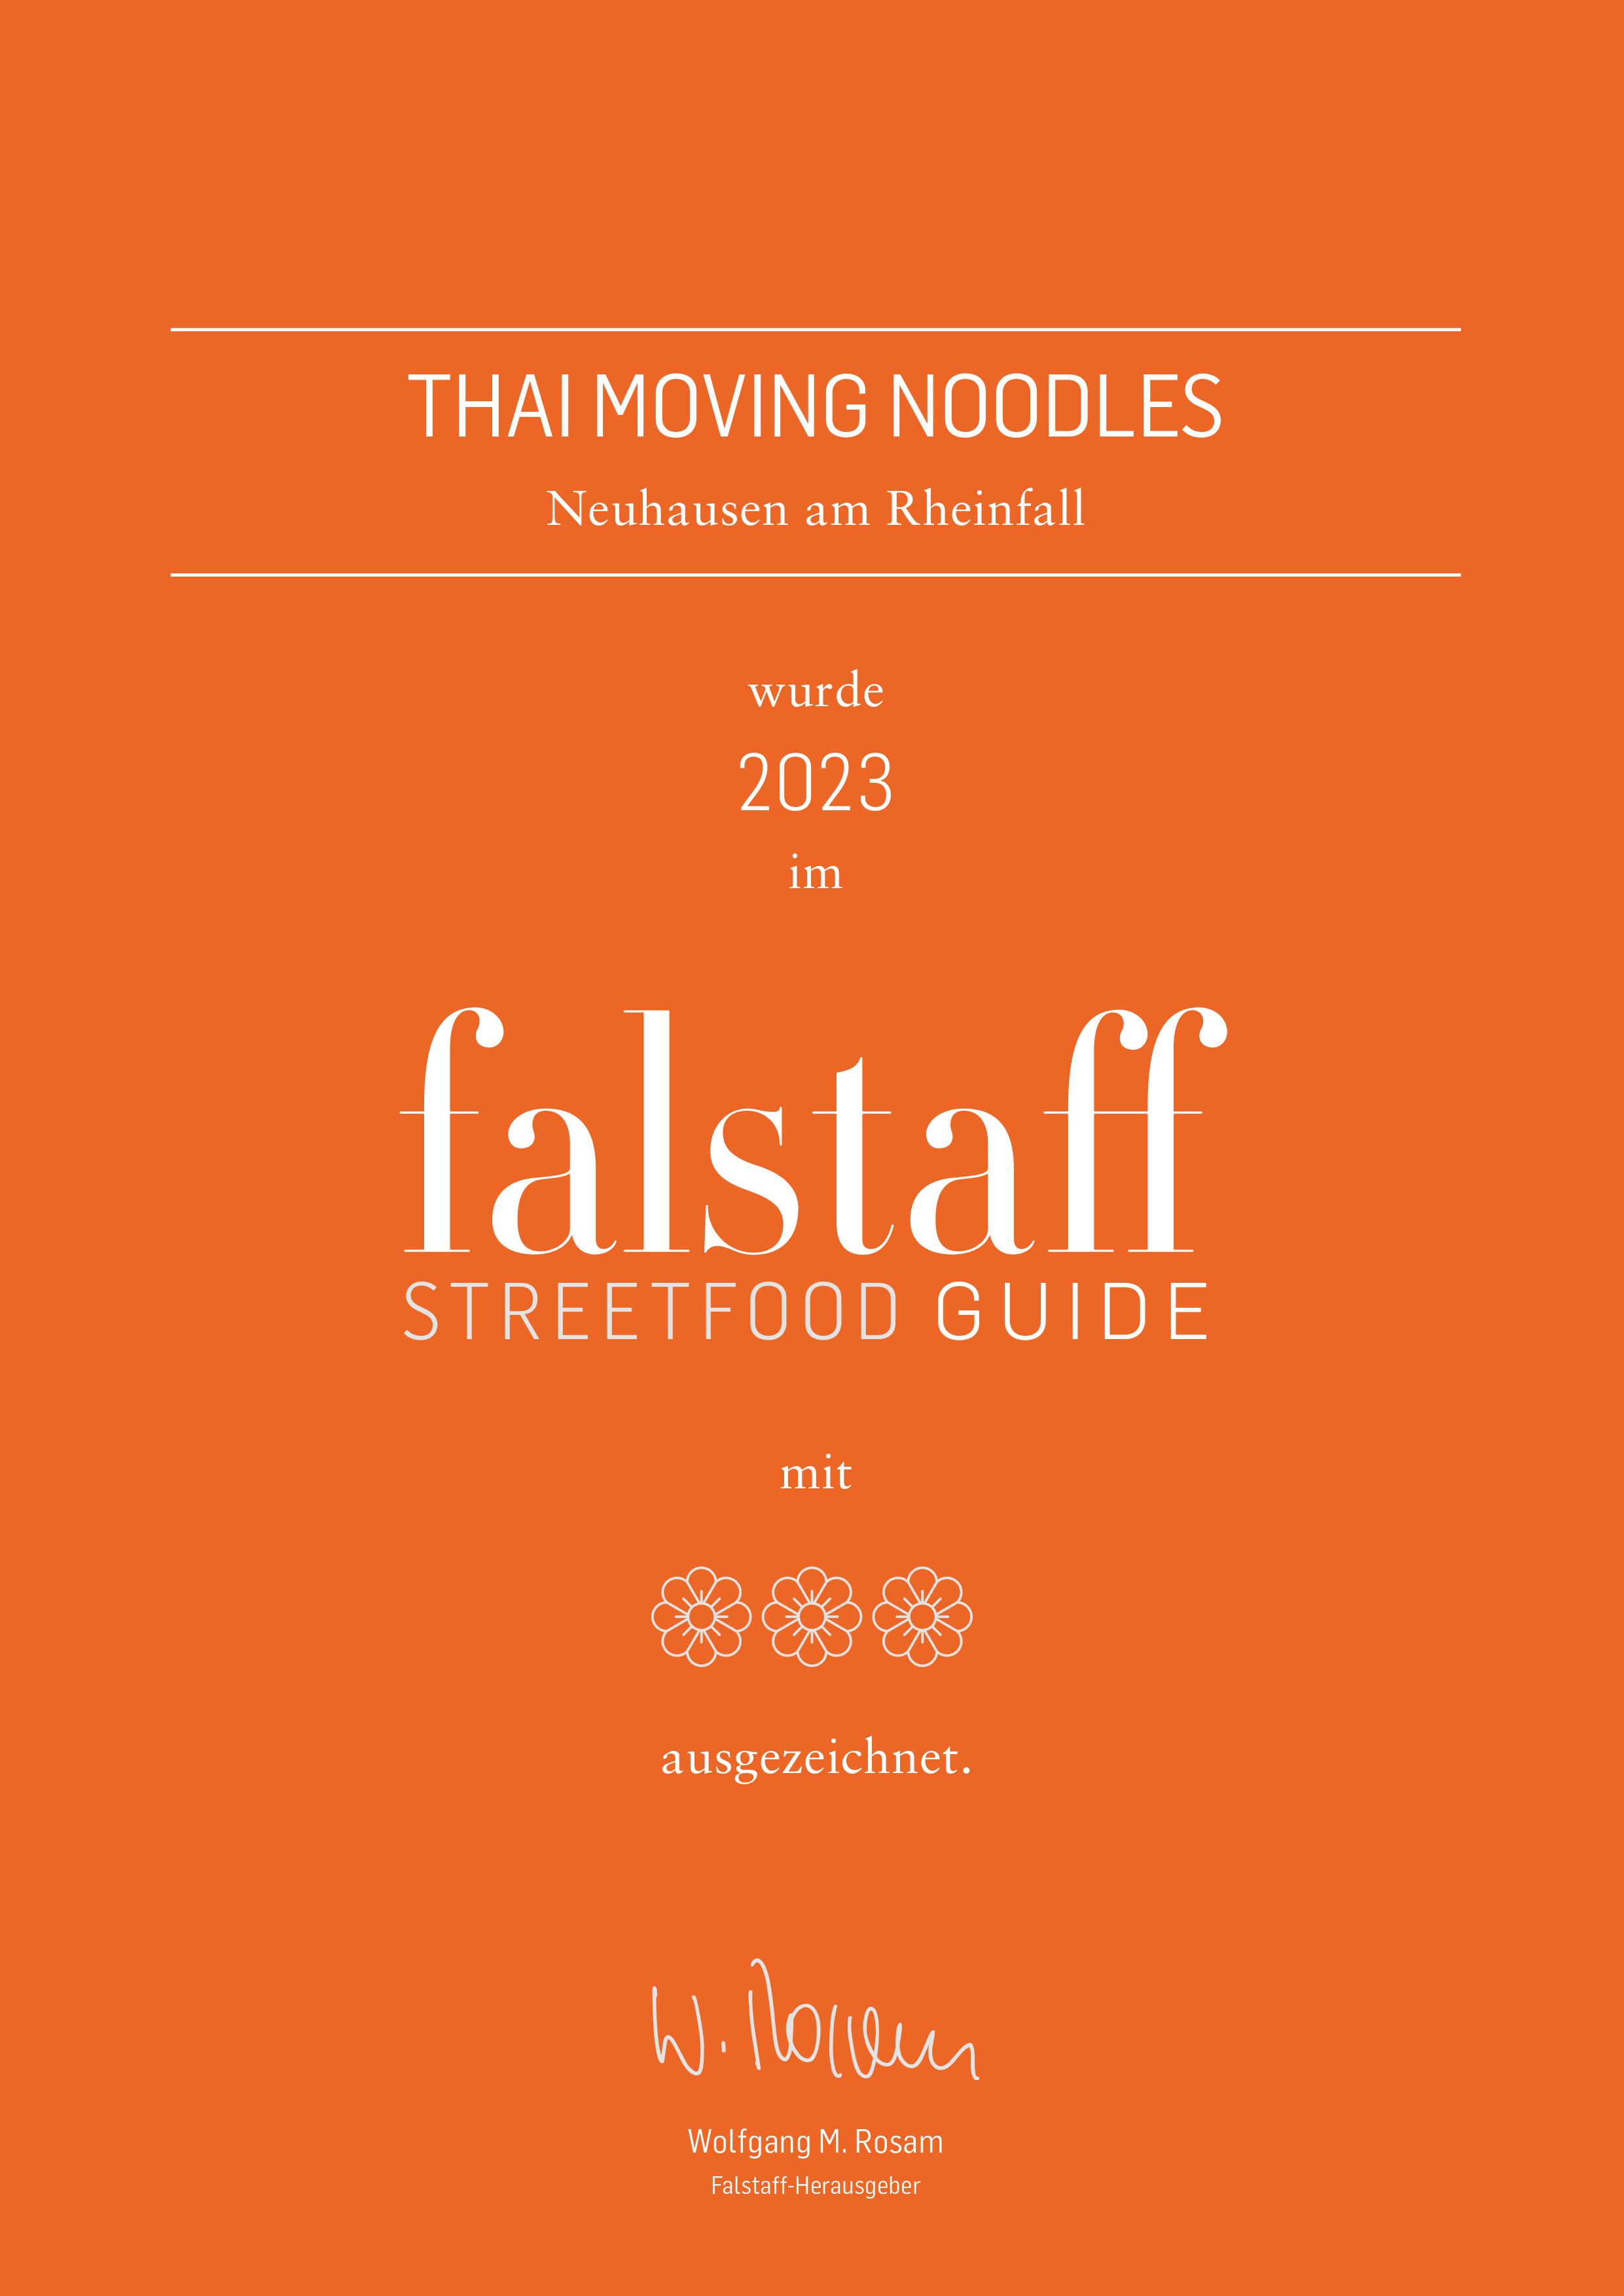 Falstaff Streetfood Guide Auszeichnung 2023